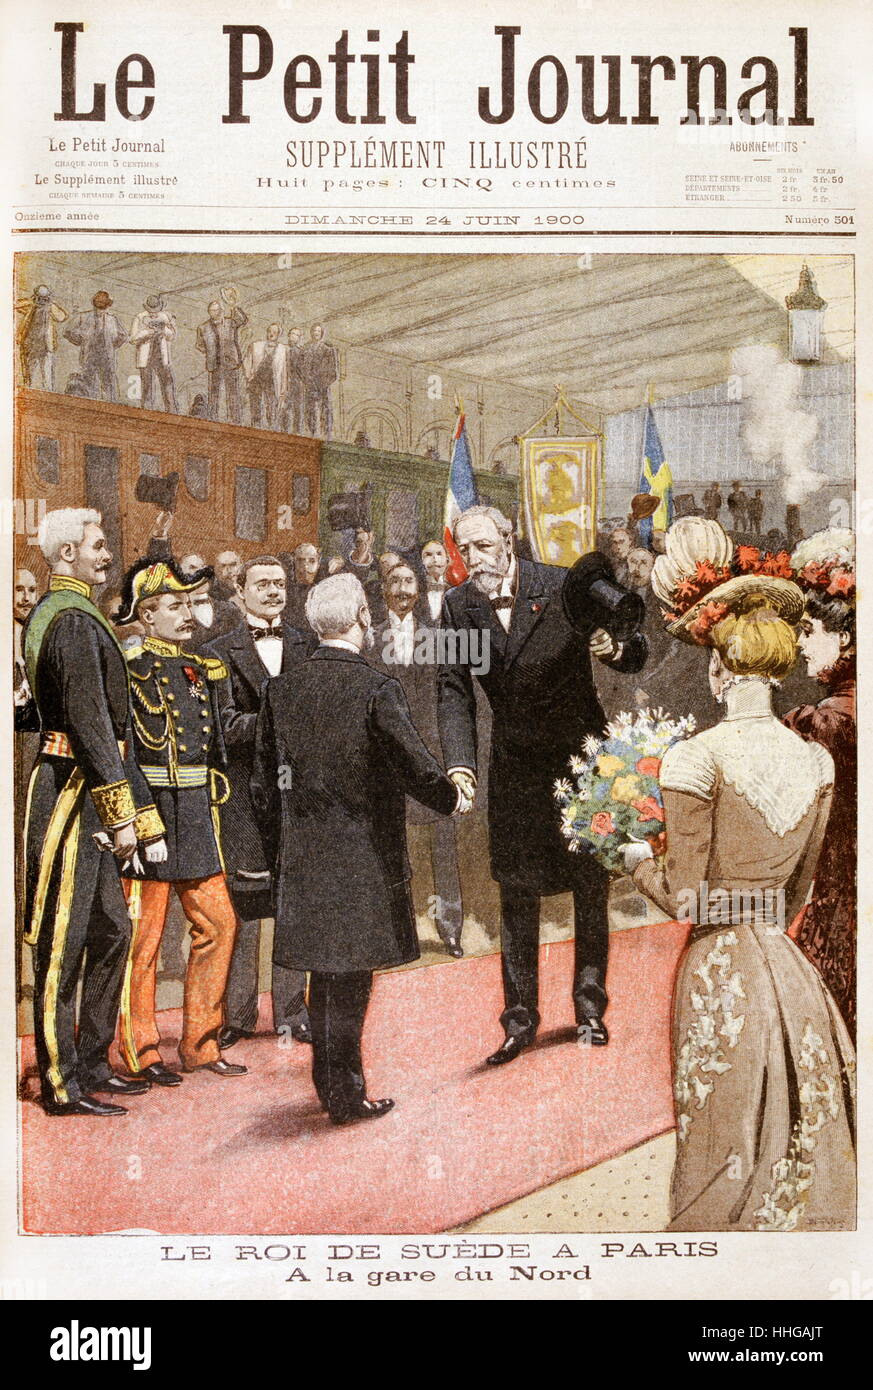 Oscar II, Rey de Suecia visita Francia. 1900, el rey Oscar de Suecia (derecha) de llegar a París para visitar la Exposición Universal. Él es bienvenido en la Gare du Nord, por el Presidente loubet Foto de stock